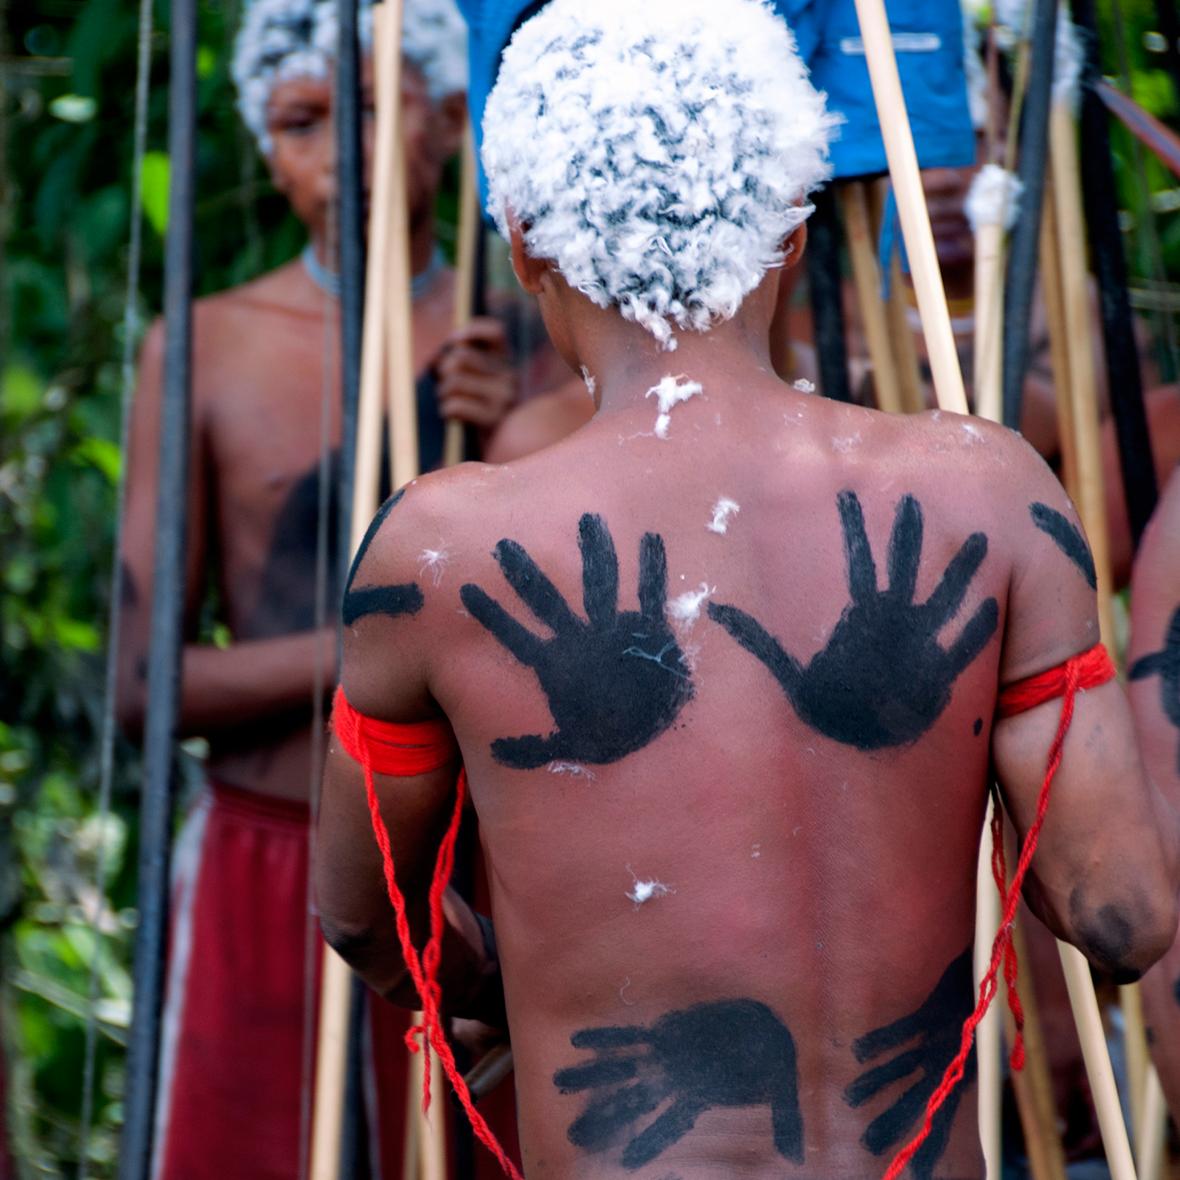 Το μέλλον των Γιανομάνι, οι οποίοι ζουν σε απομακρυσμένο τροπικό δάσος στον βόρειο Αμαζόνιο, στη Βραζιλία, απειλείται από τις εξορύξεις